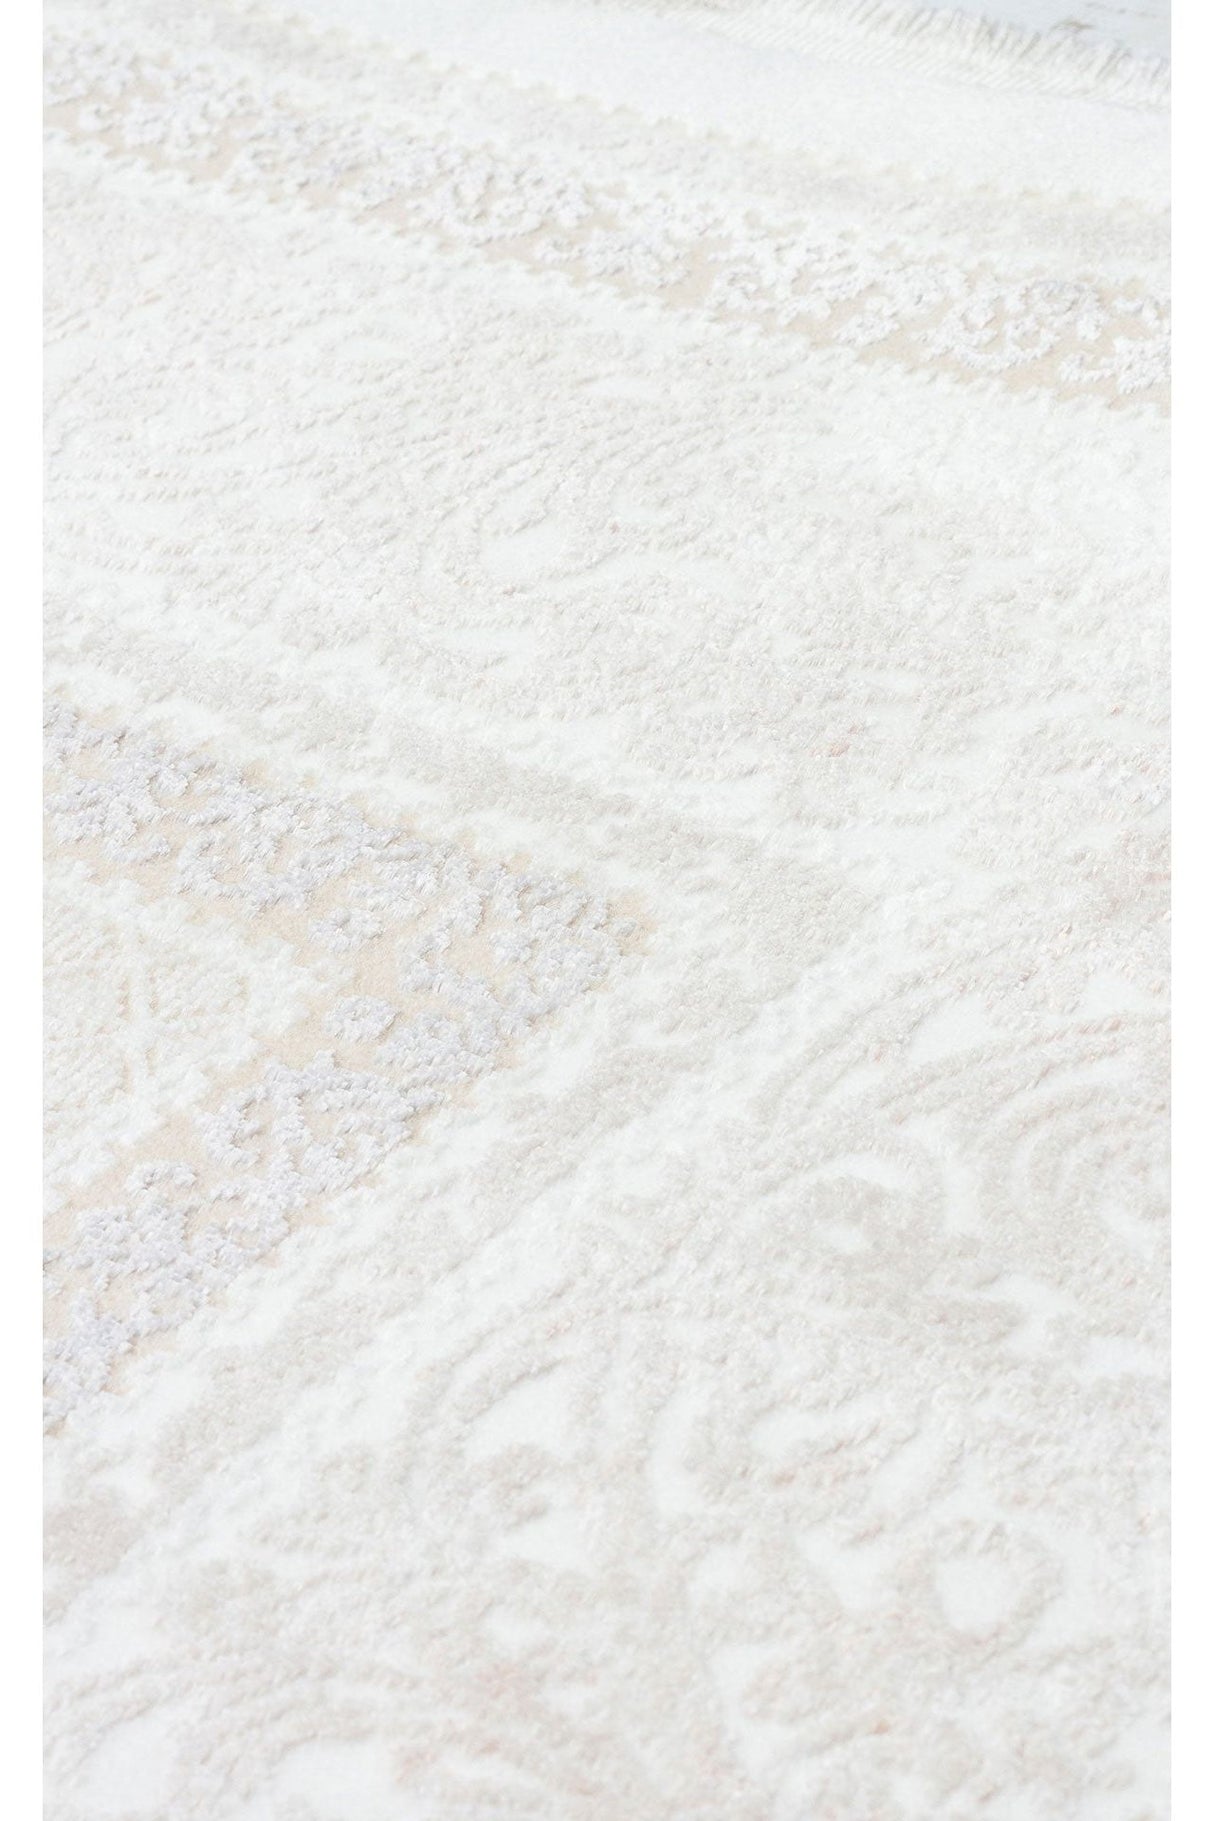 #Turkish_Carpets_Rugs# #Modern_Carpets# #Abrash_Carpets#St 104 Beige